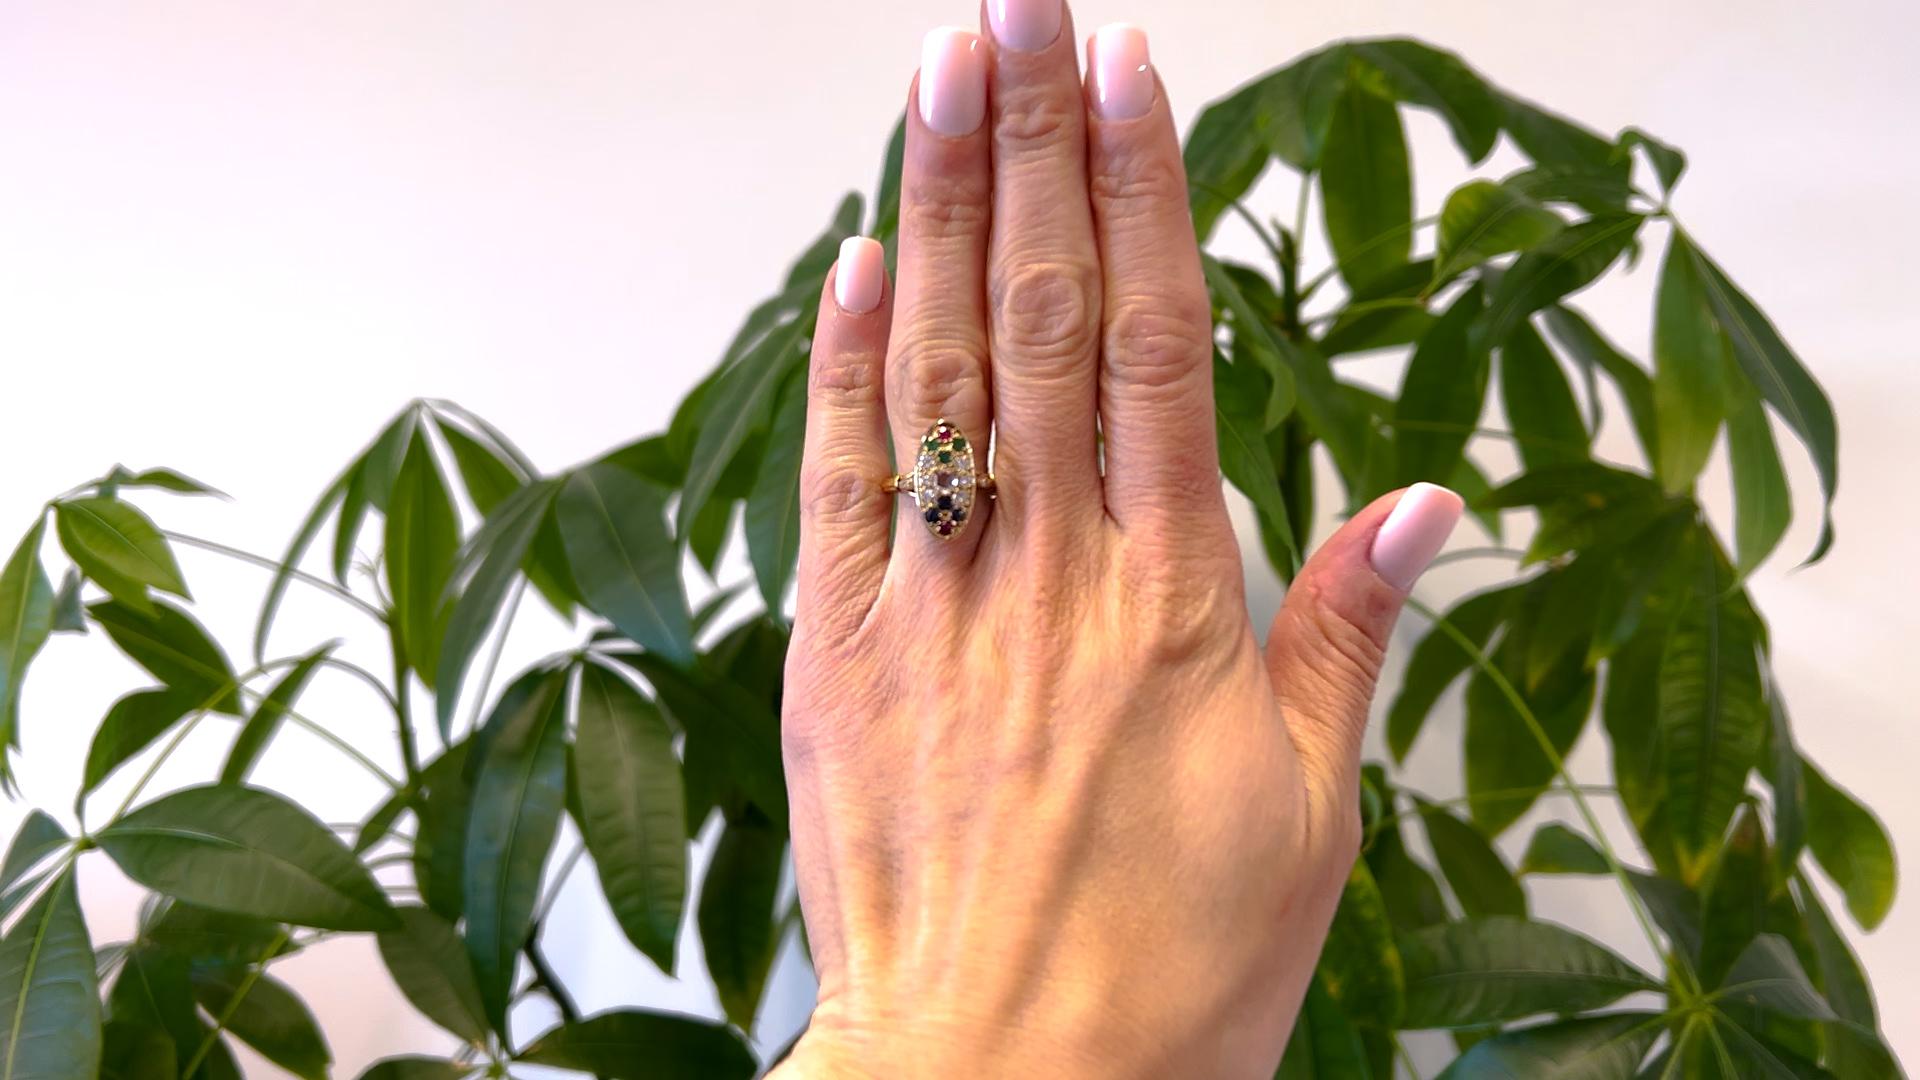 Ein Vintage Französisch Diamant und Edelstein 18k Gelbgold Ring. Mit einem Diamanten im Rosenschliff mit einem Gewicht von ca. 0,20 Karat, Farbe I, Reinheit VS. Akzentuiert durch acht runde Diamanten im Brillantschliff mit einem Gesamtgewicht von